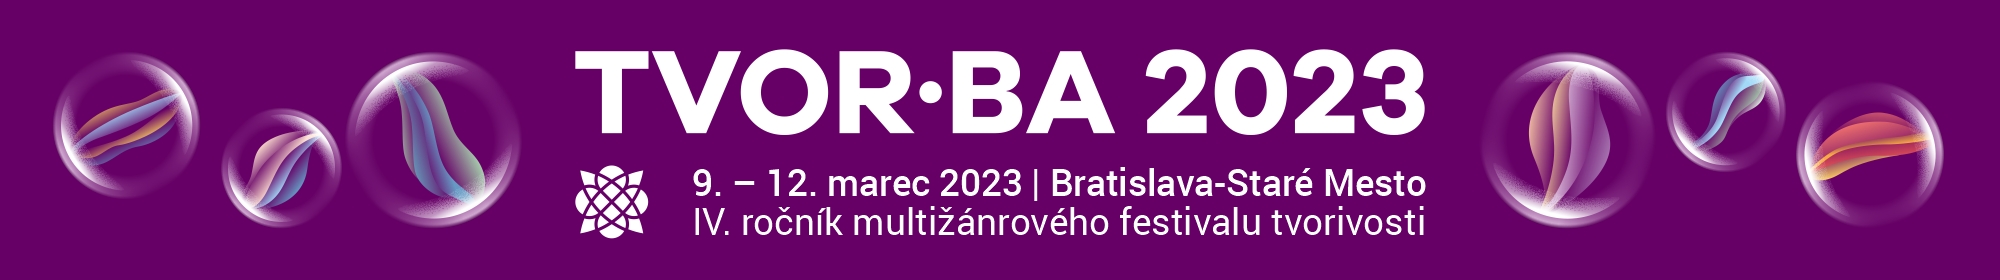 TVOR•BA 2023